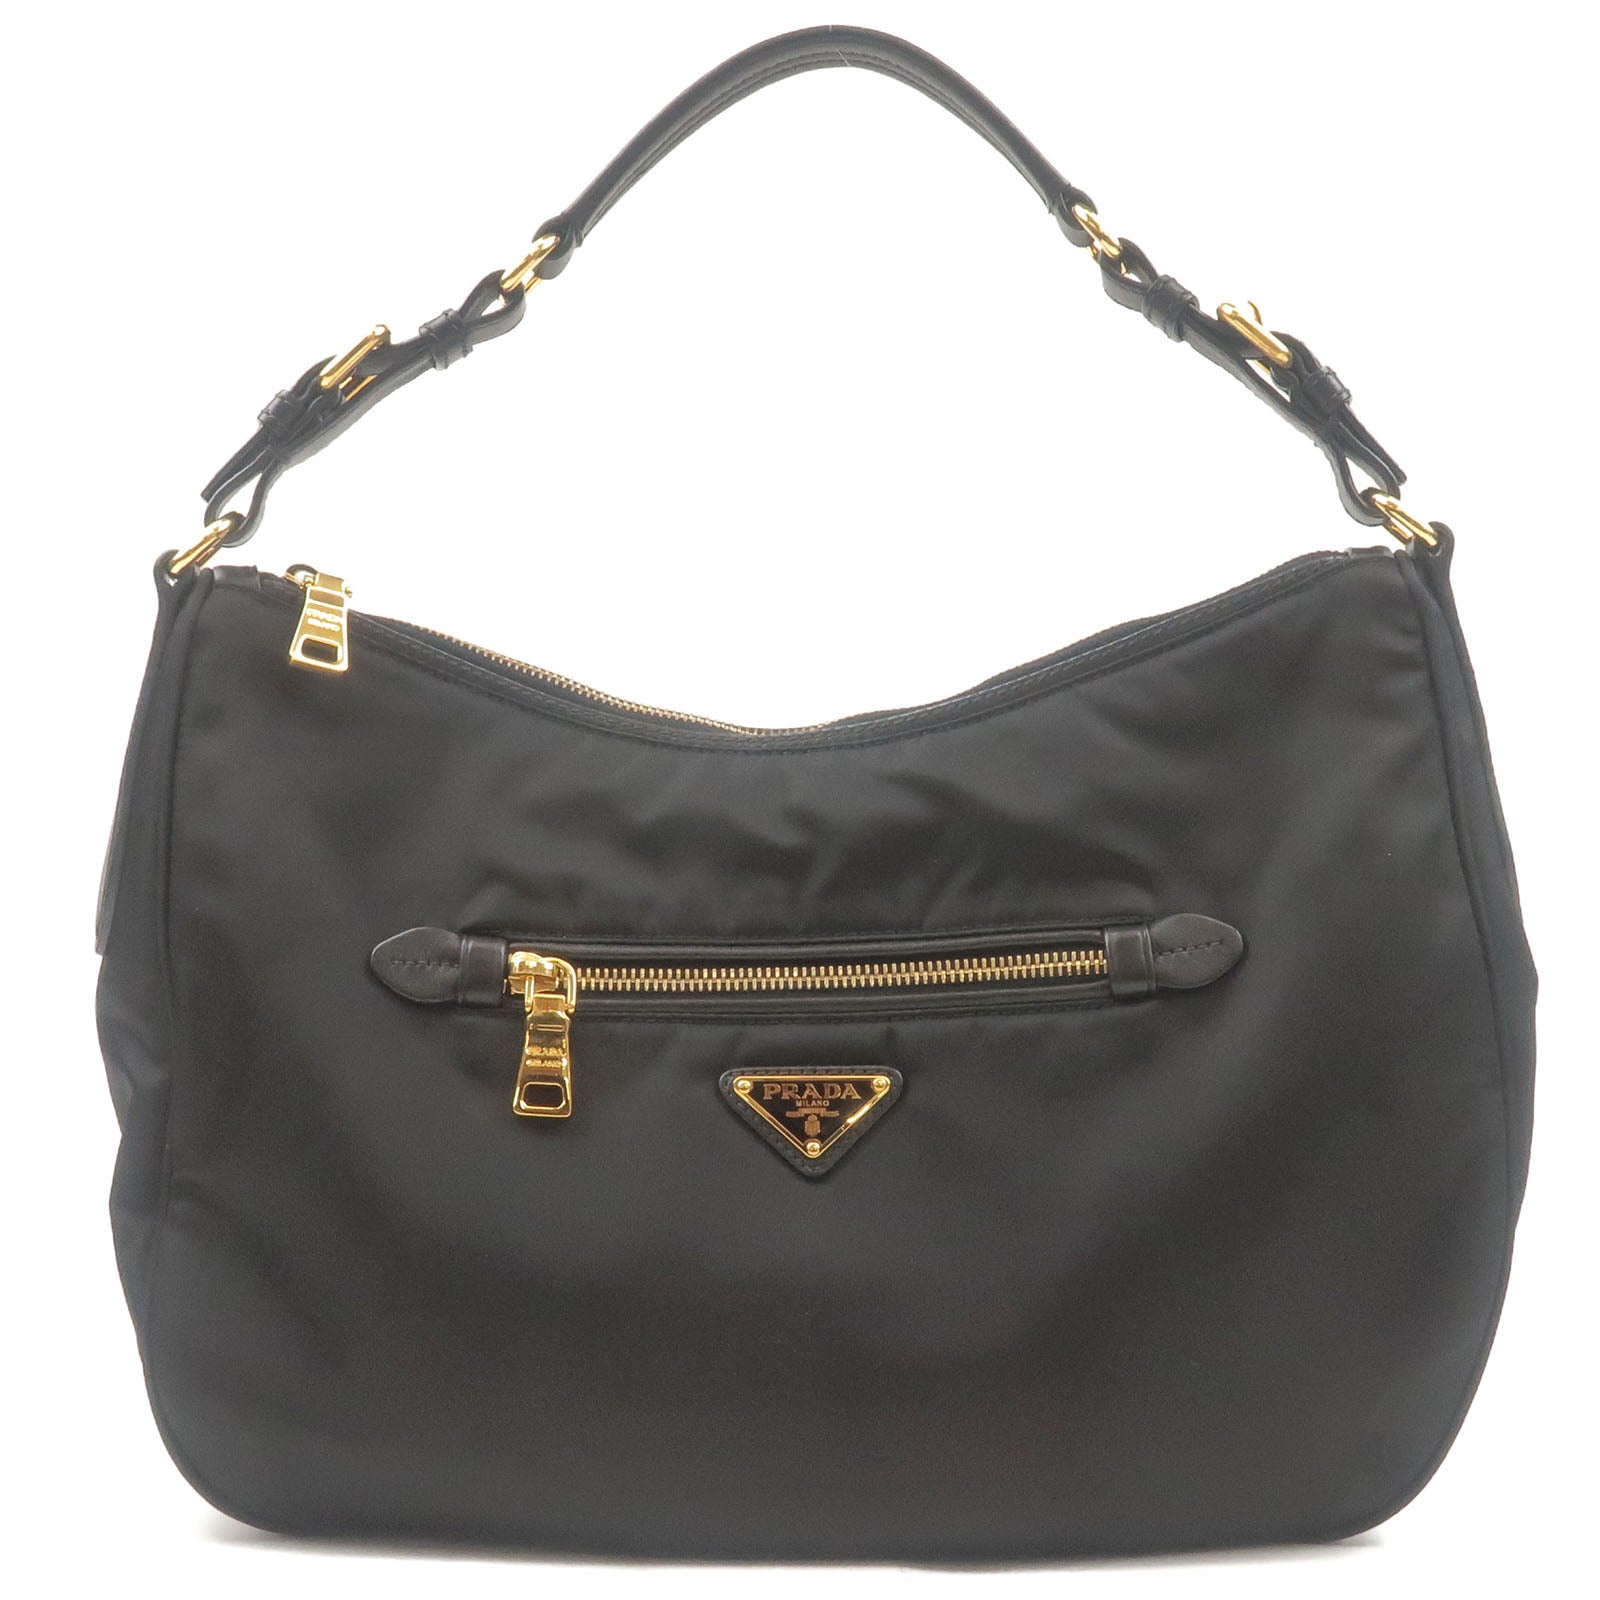 Leather handbag Prada Burgundy in Leather - 40079388